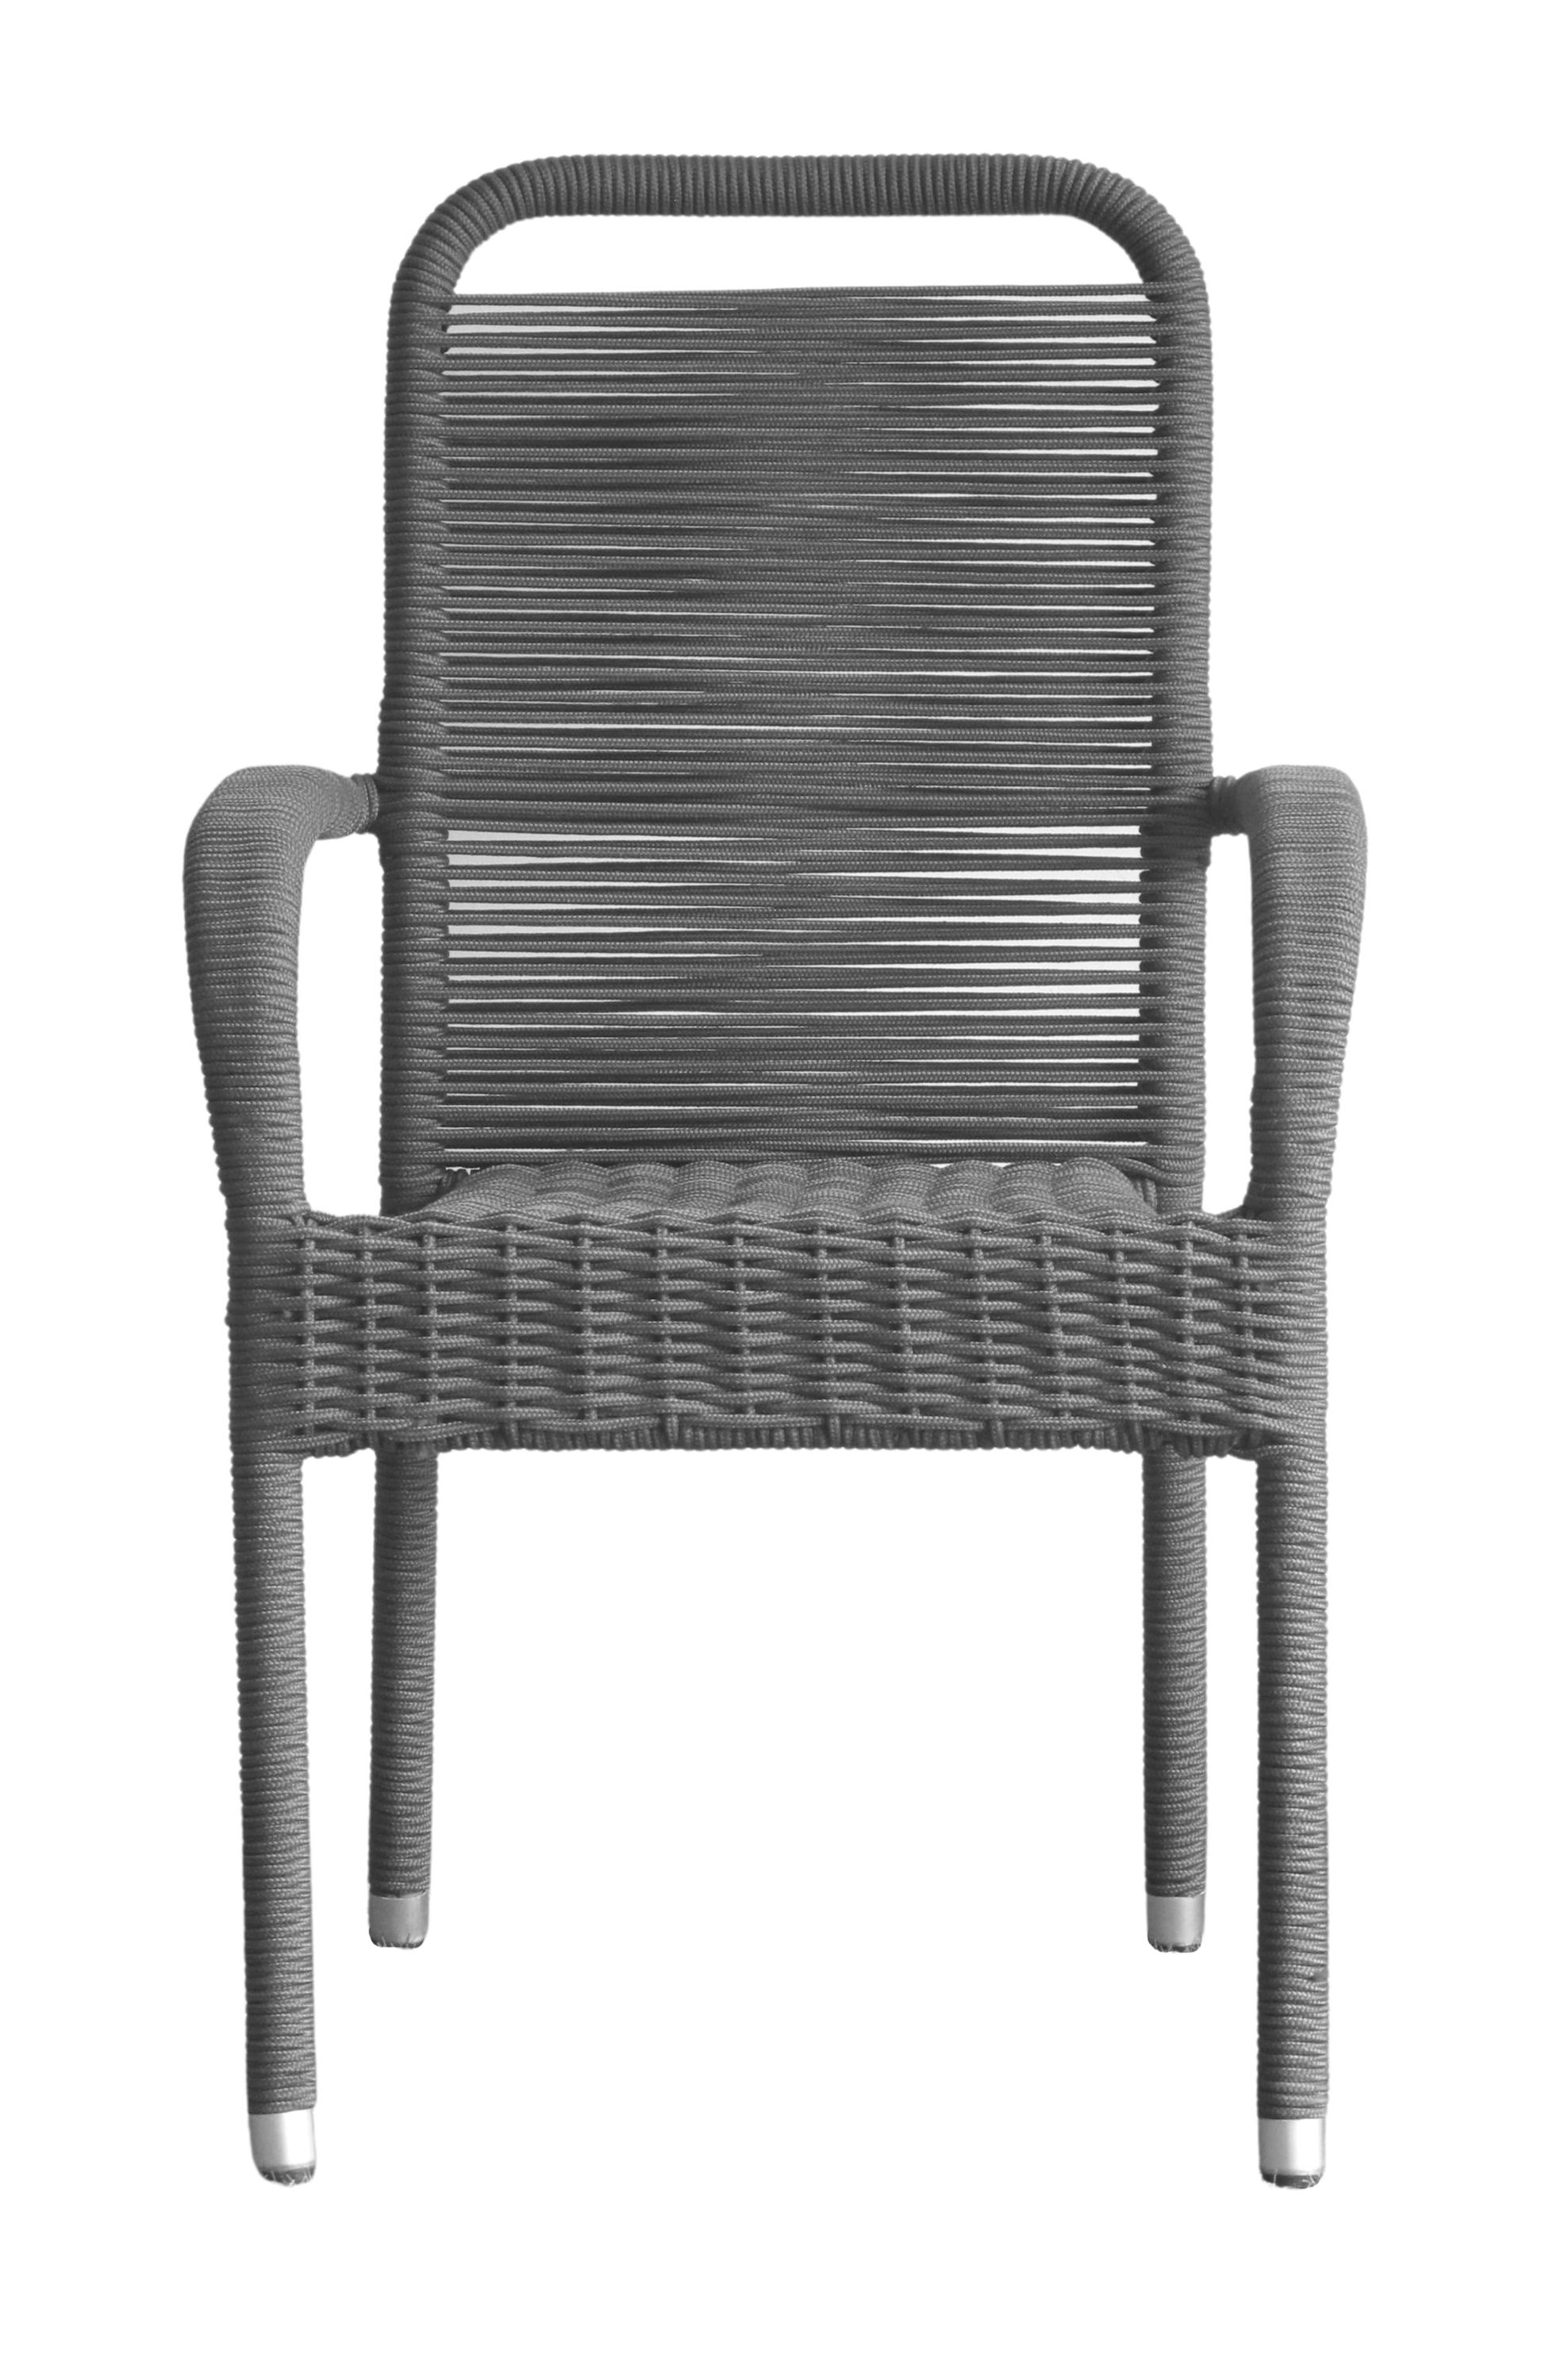 Bộ ghế dây xích màu xám được thiết kế đơn giản nhưng không kém phần tinh tế. Với chất liệu bền chắc và độ bền cao, bộ ghế này sẽ trở thành điểm nhấn cho không gian xanh của bạn. Hãy cùng thư giãn và tận hưởng những khoảnh khắc thú vị với bộ ghế này!